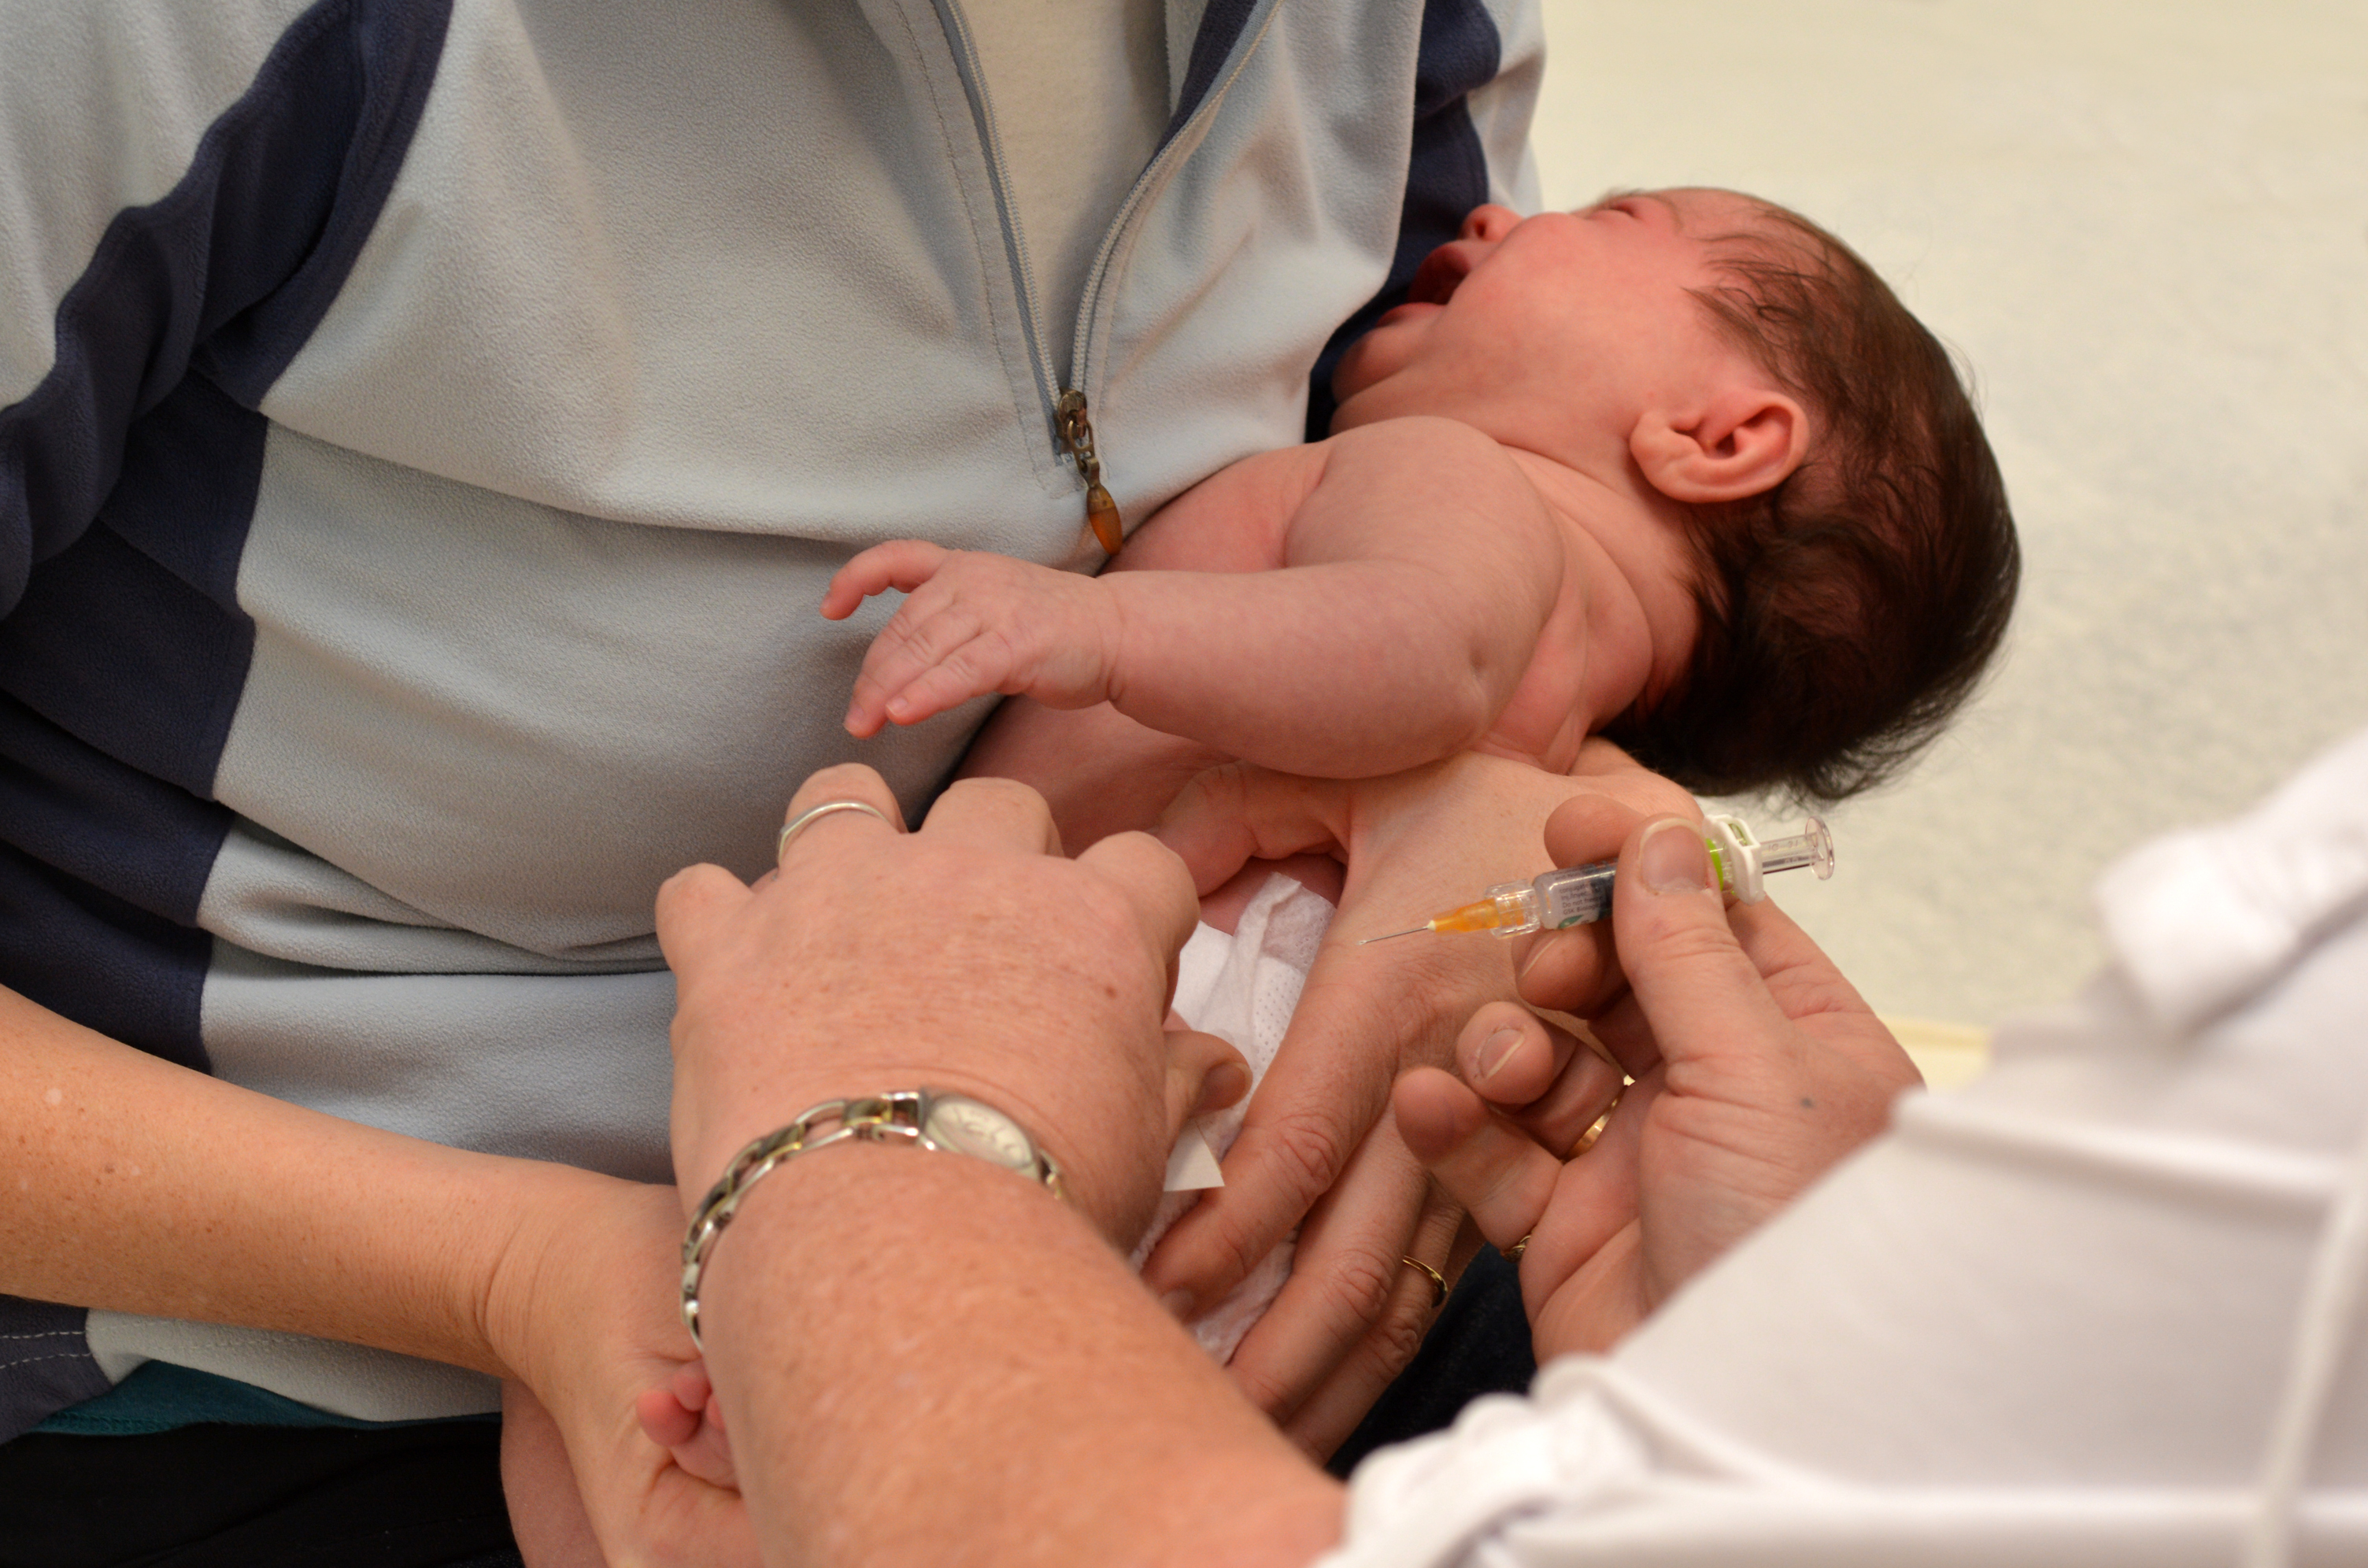 Гепатит в вакцинация новорожденных. Прививка в роддоме новорожденным. Прививки от гепатита новорожденным. Прививка от гепатита новорожденному. Прививка от гепатита новорожденным в роддоме.